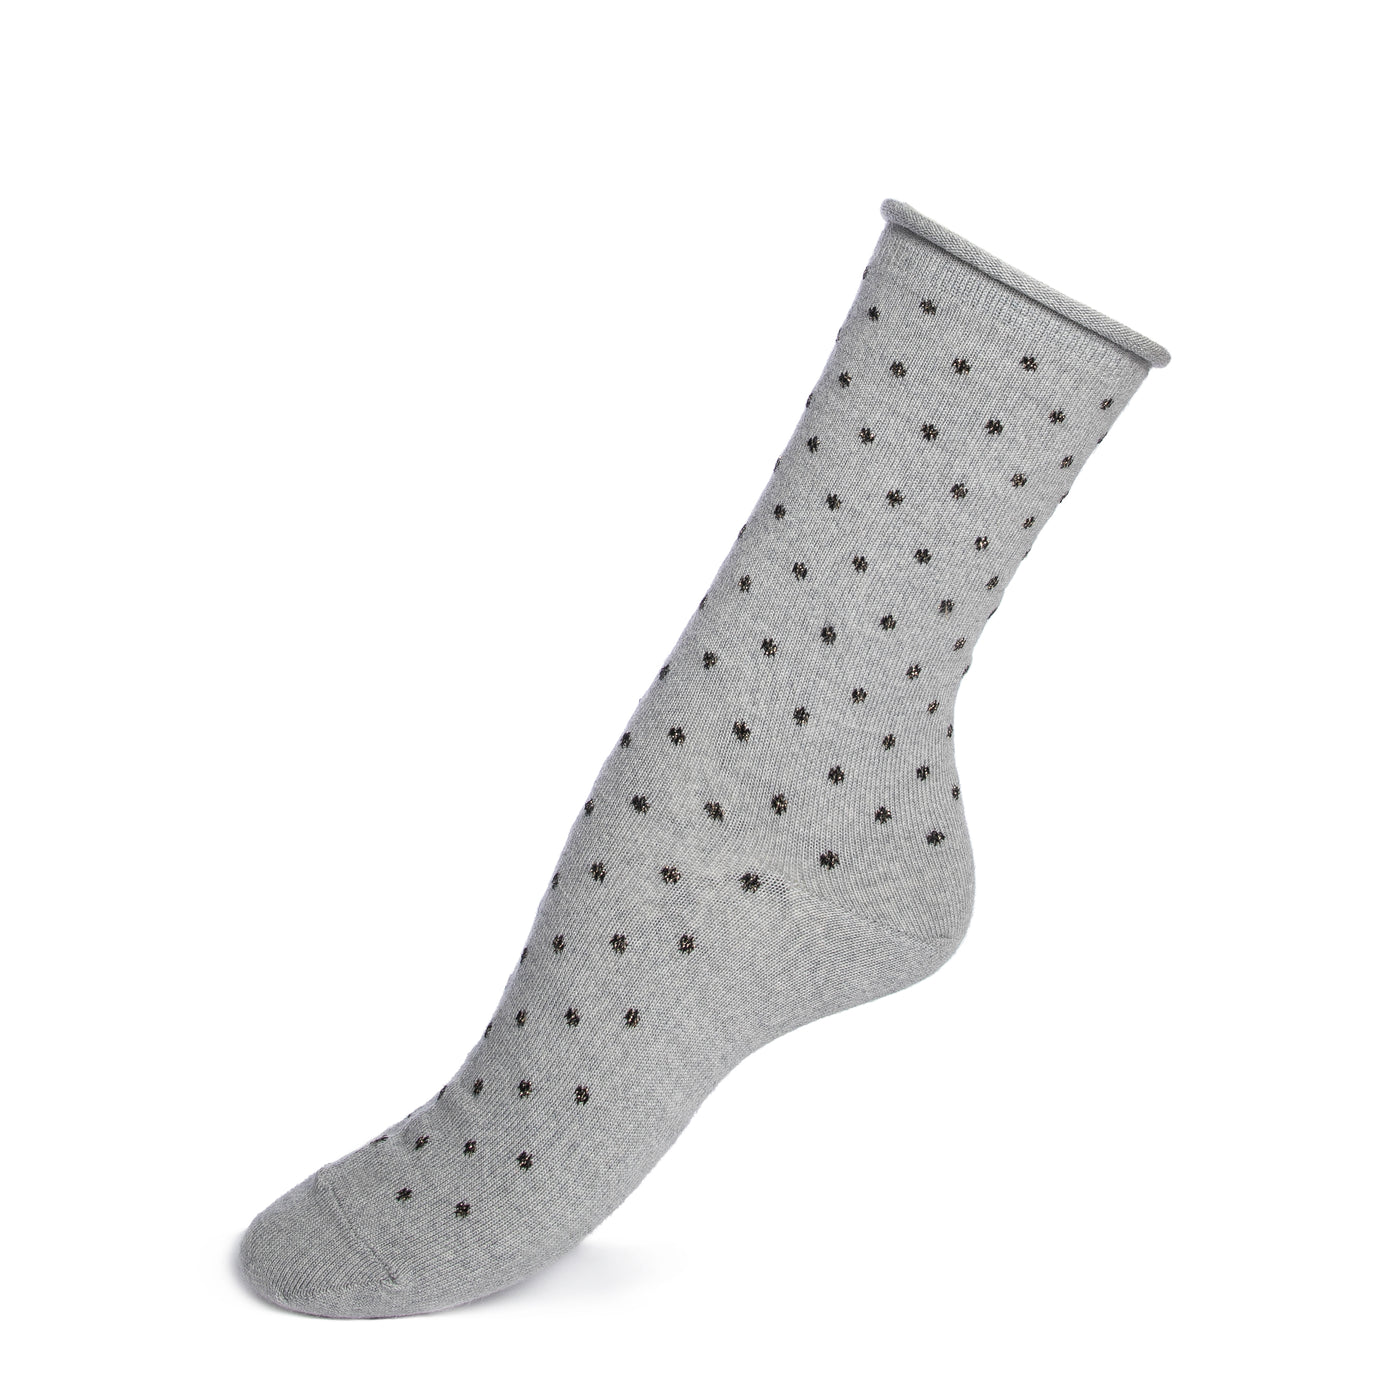 Polka dot socks with rolled edge